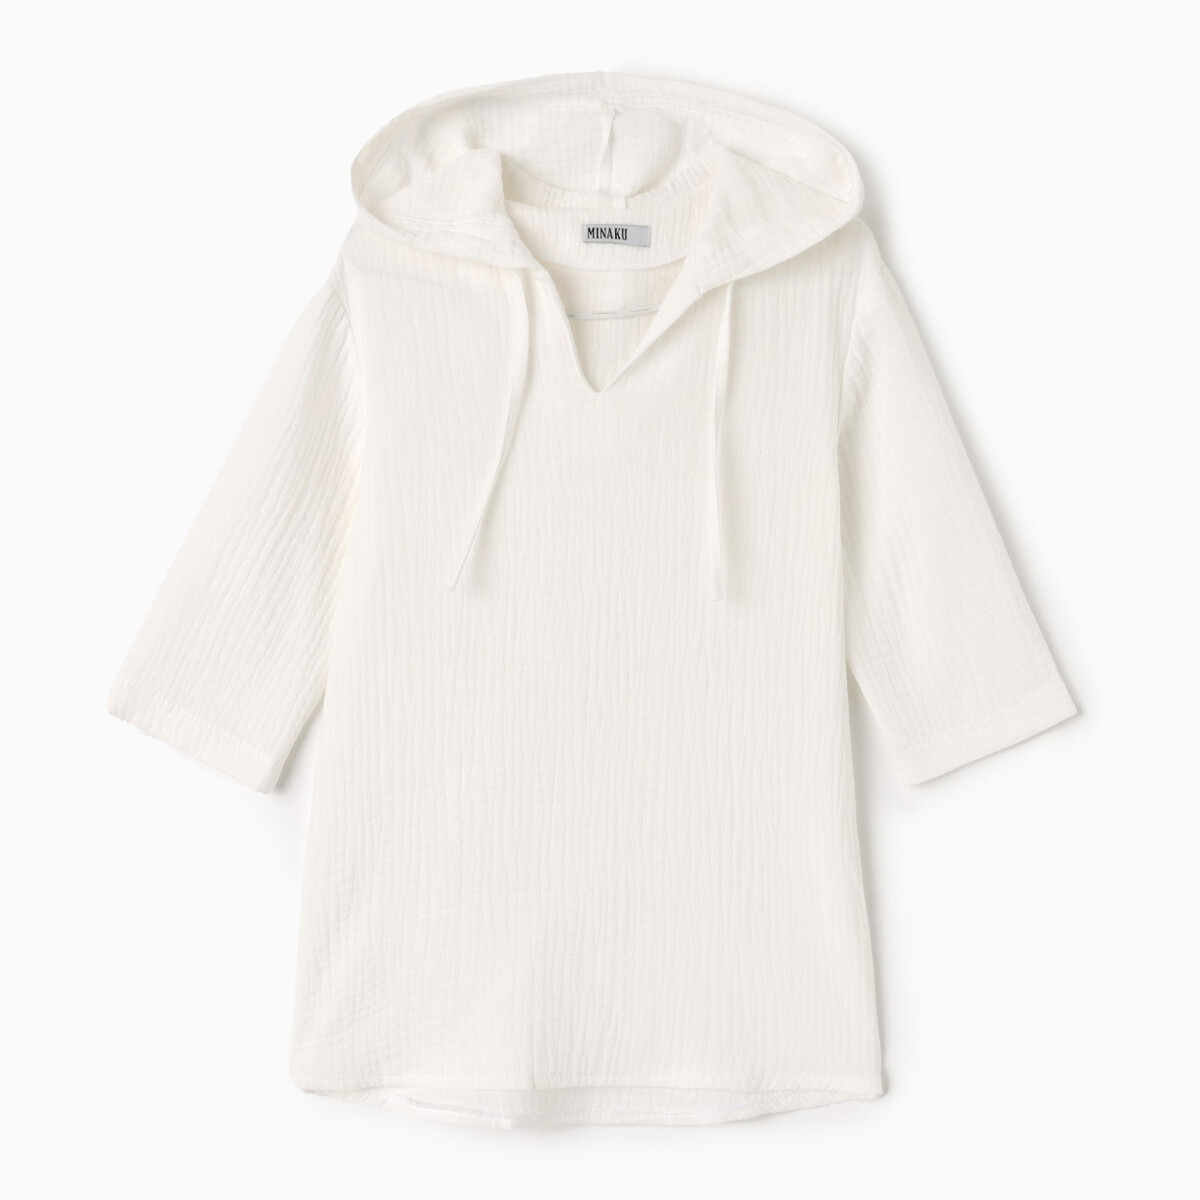 Рубашка пончо MINAKU, размер рост 86 см, цвет белый